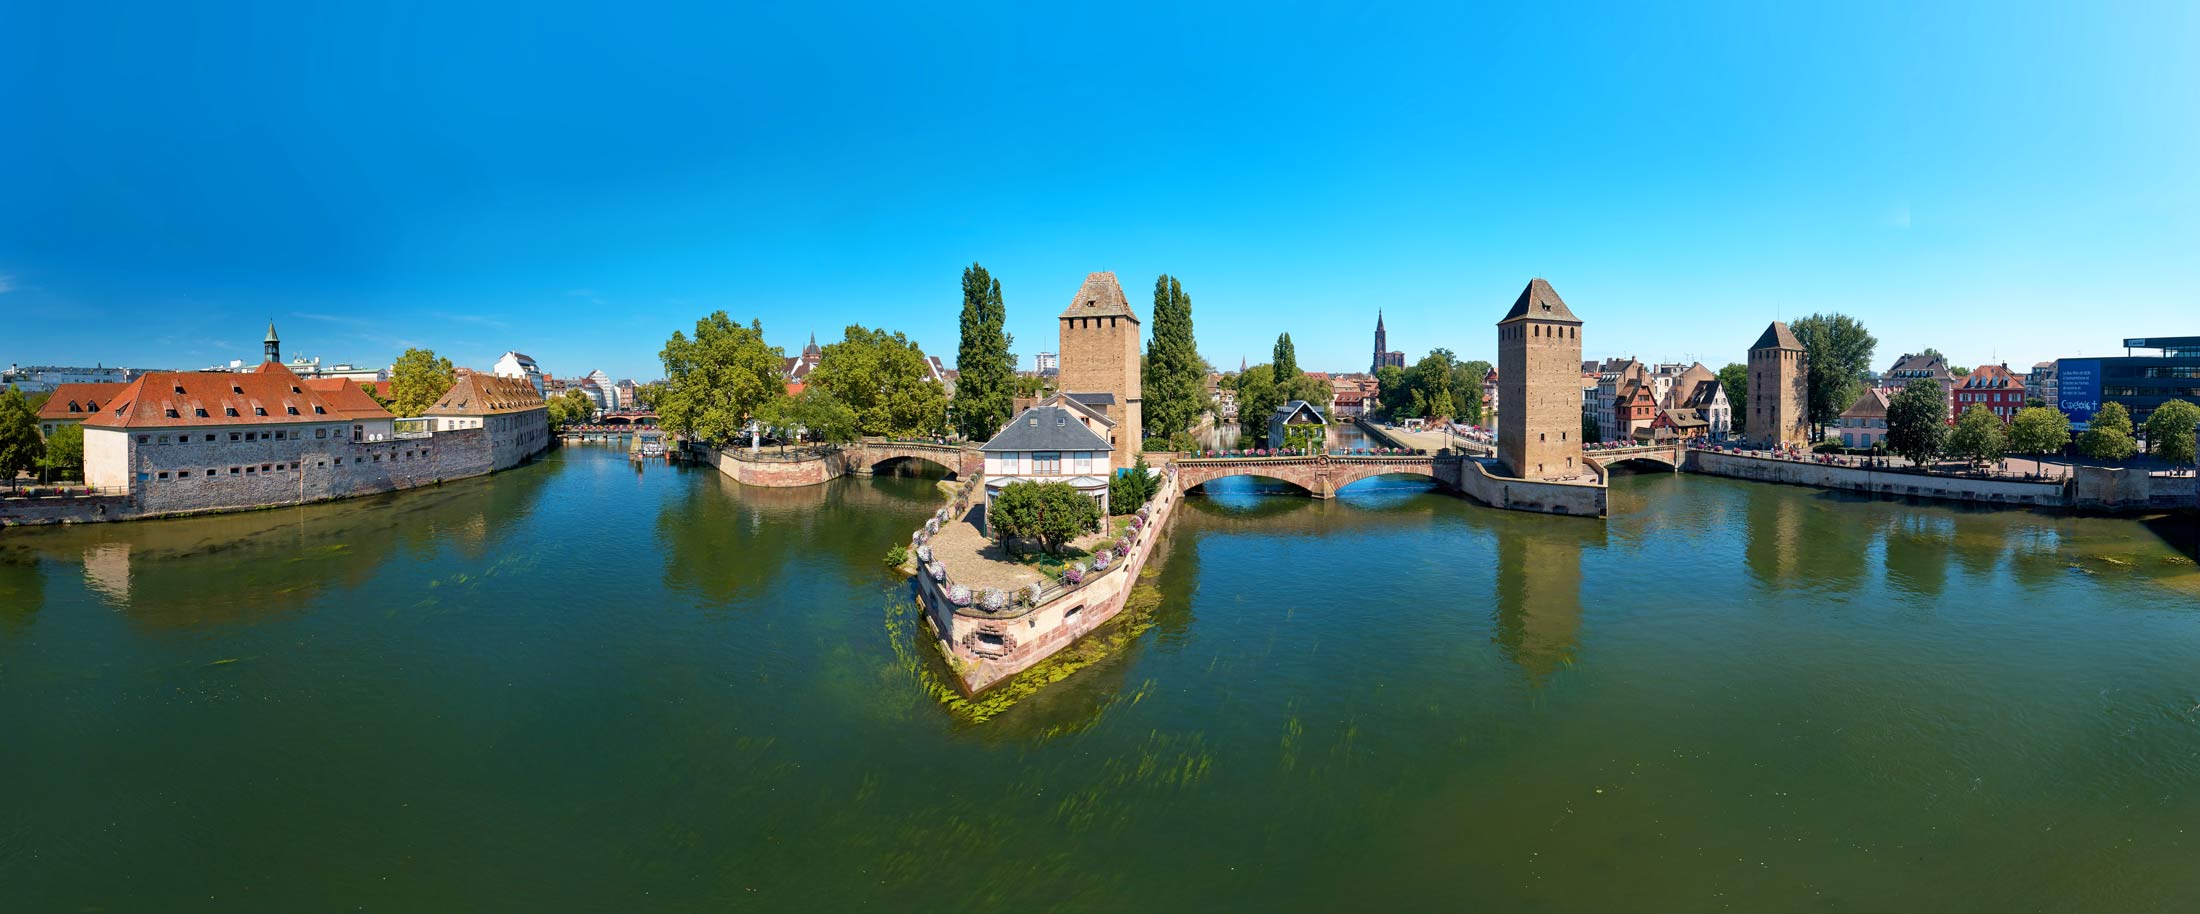 Prise de vue d'architecture et d'urbanisme réalisée par drone des ponts couverts de Strasbourg